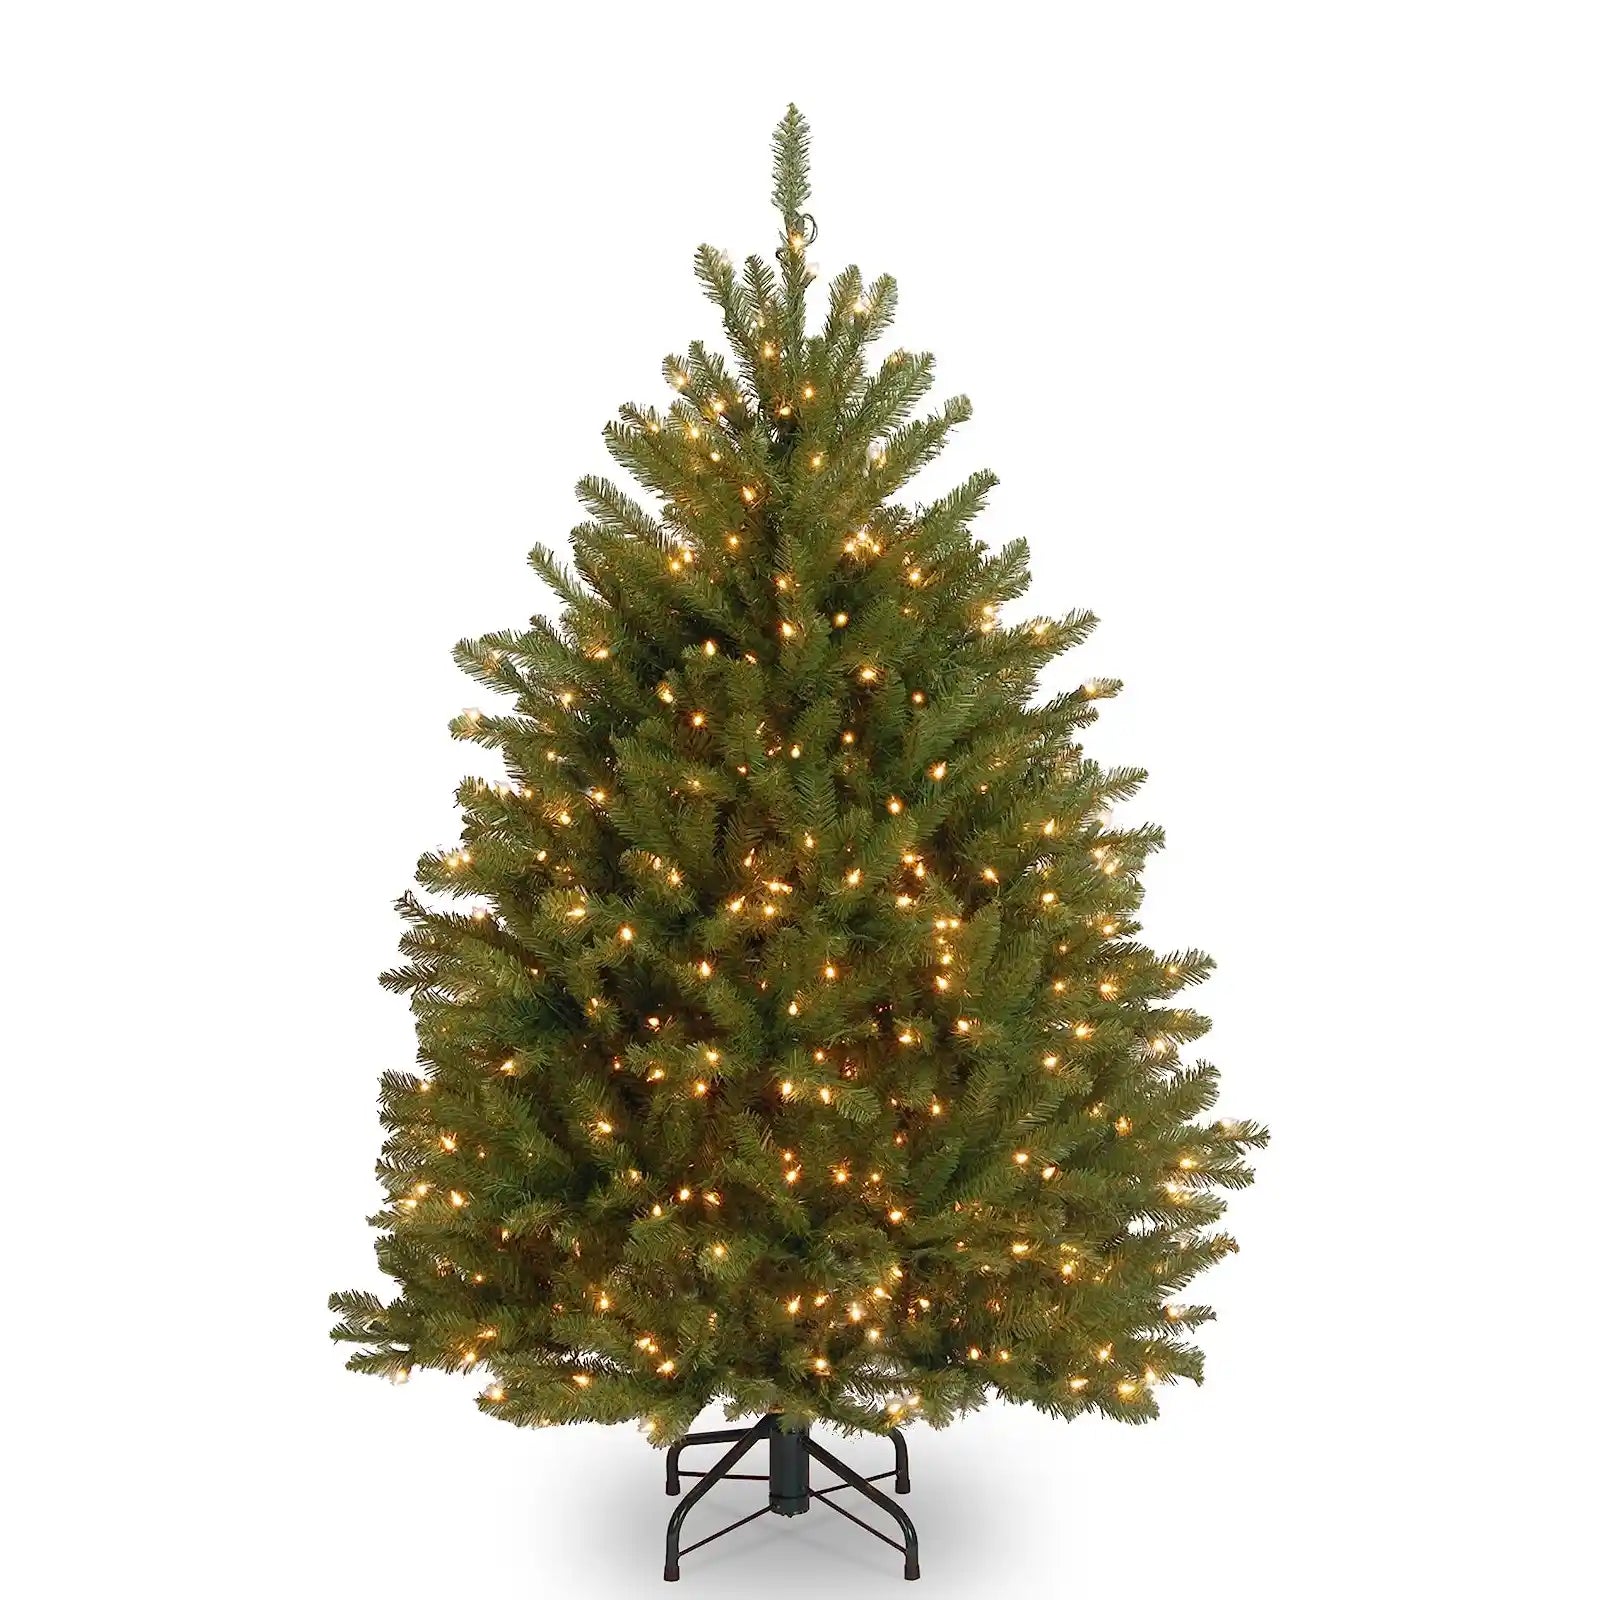 Mini árbol de Navidad artificial preiluminado, verde, abeto Dunhill, luces blancas, incluye soporte, 4 pies 